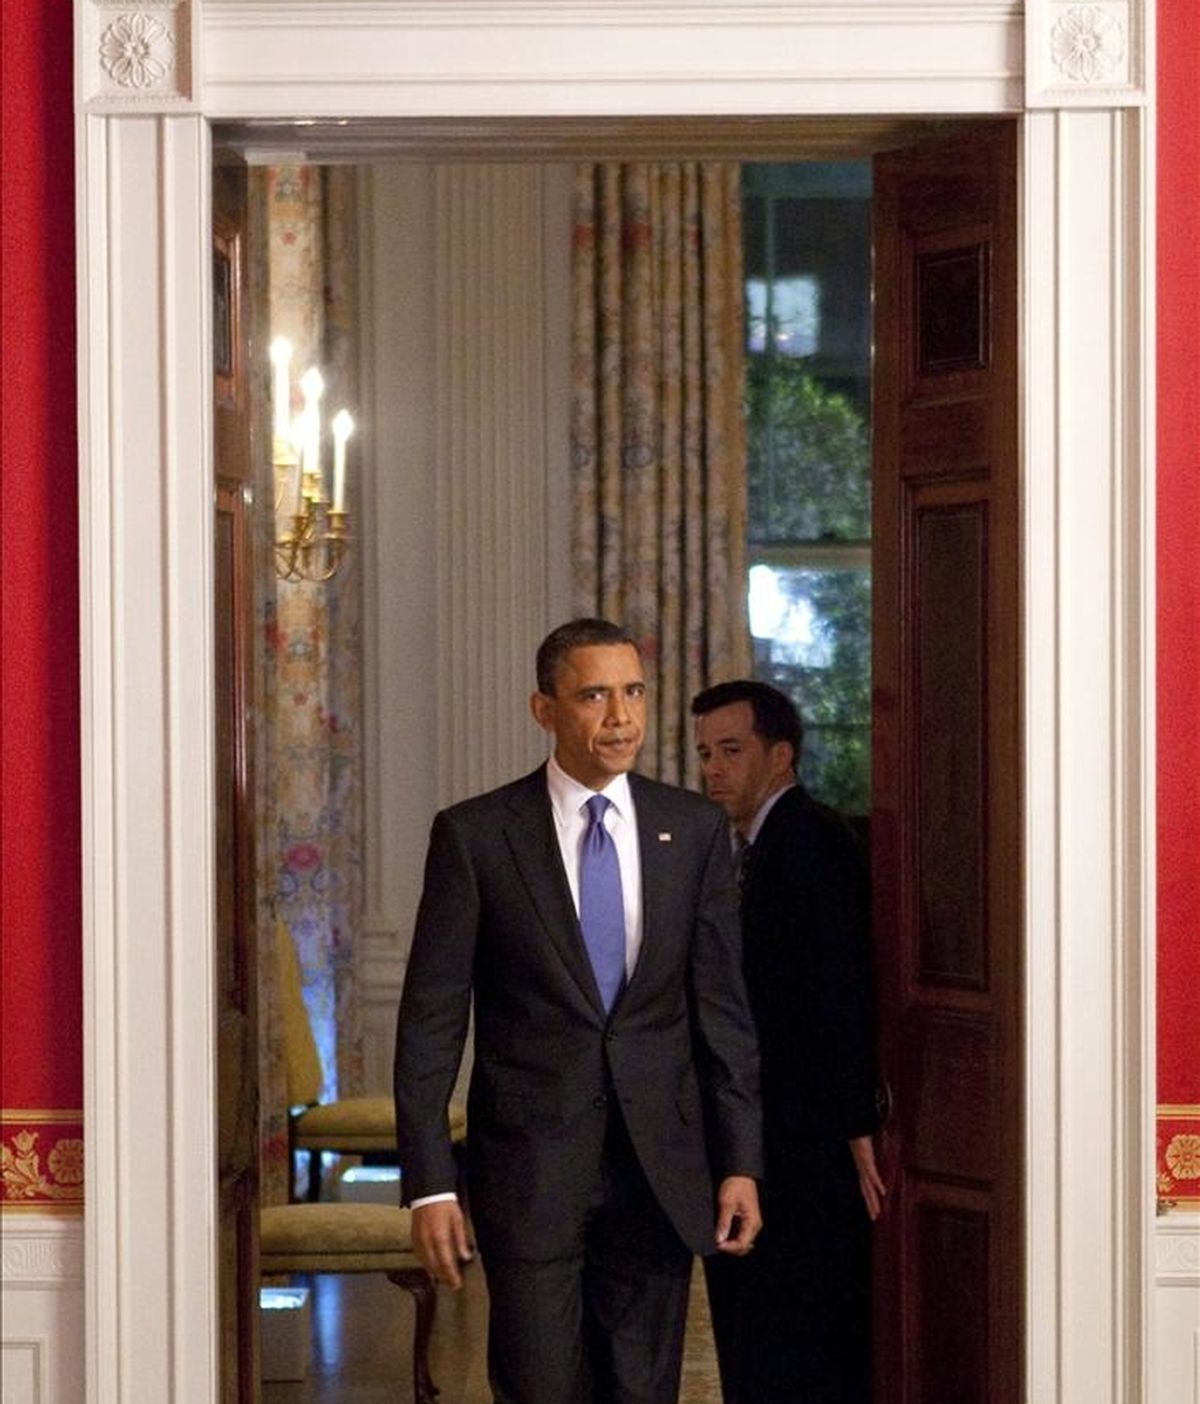 El presidente de Estados Unidos, Barack Obama. EFE/Archivo